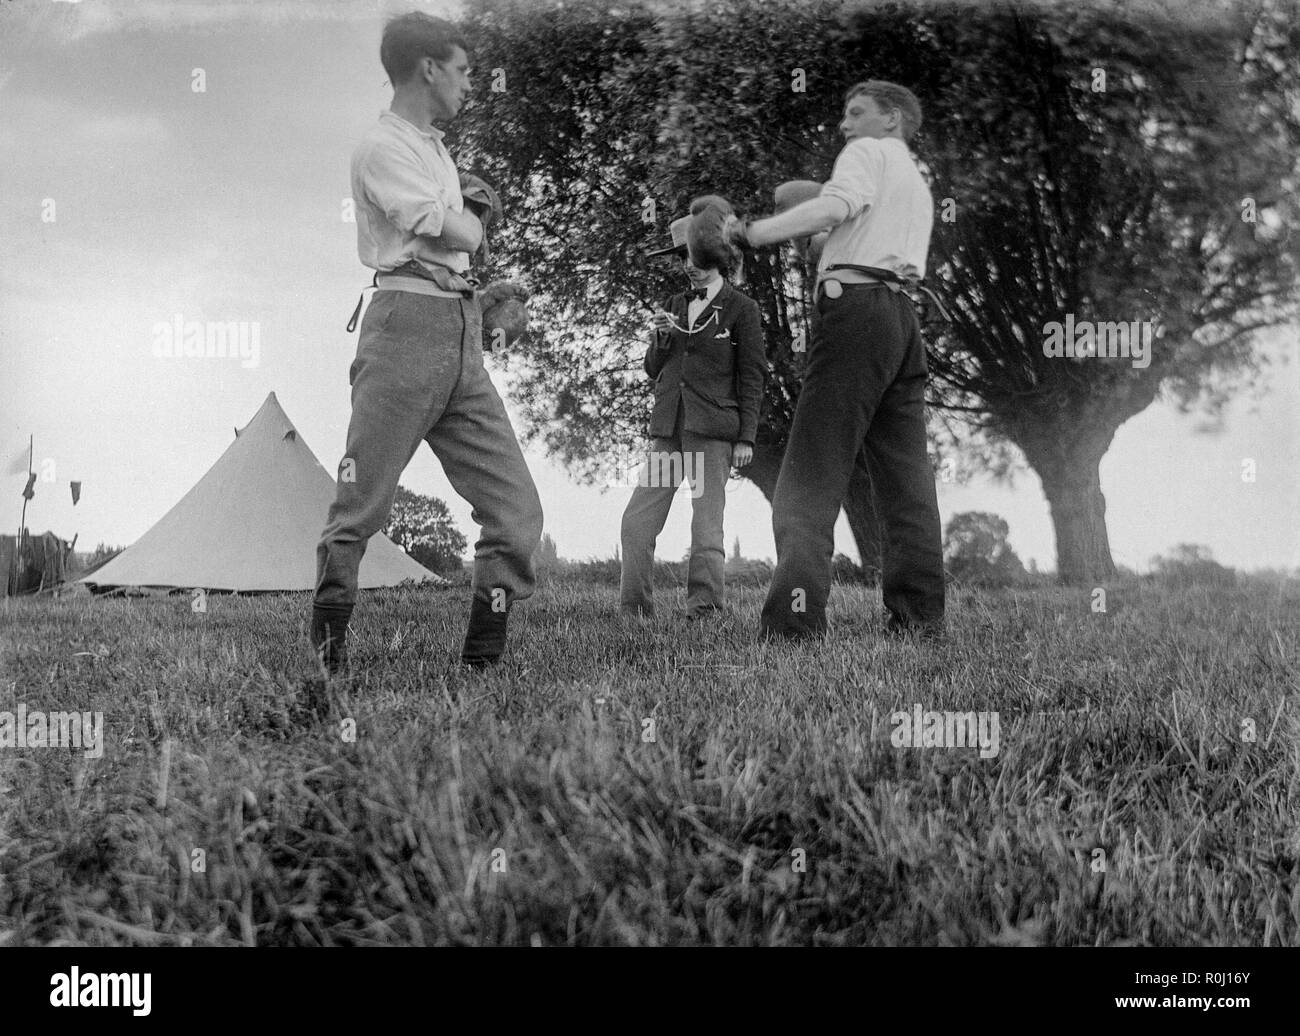 Edwardian Photographie noir et blanc montrant deux garçons, ou des jeunes hommes, sur un voyage de camping dans un champ en Angleterre, la quadrature pour un match de boxe, avec des gants de boxe vintage. Un troisième garçon agissant comme arbitre et le chronométreur. Banque D'Images